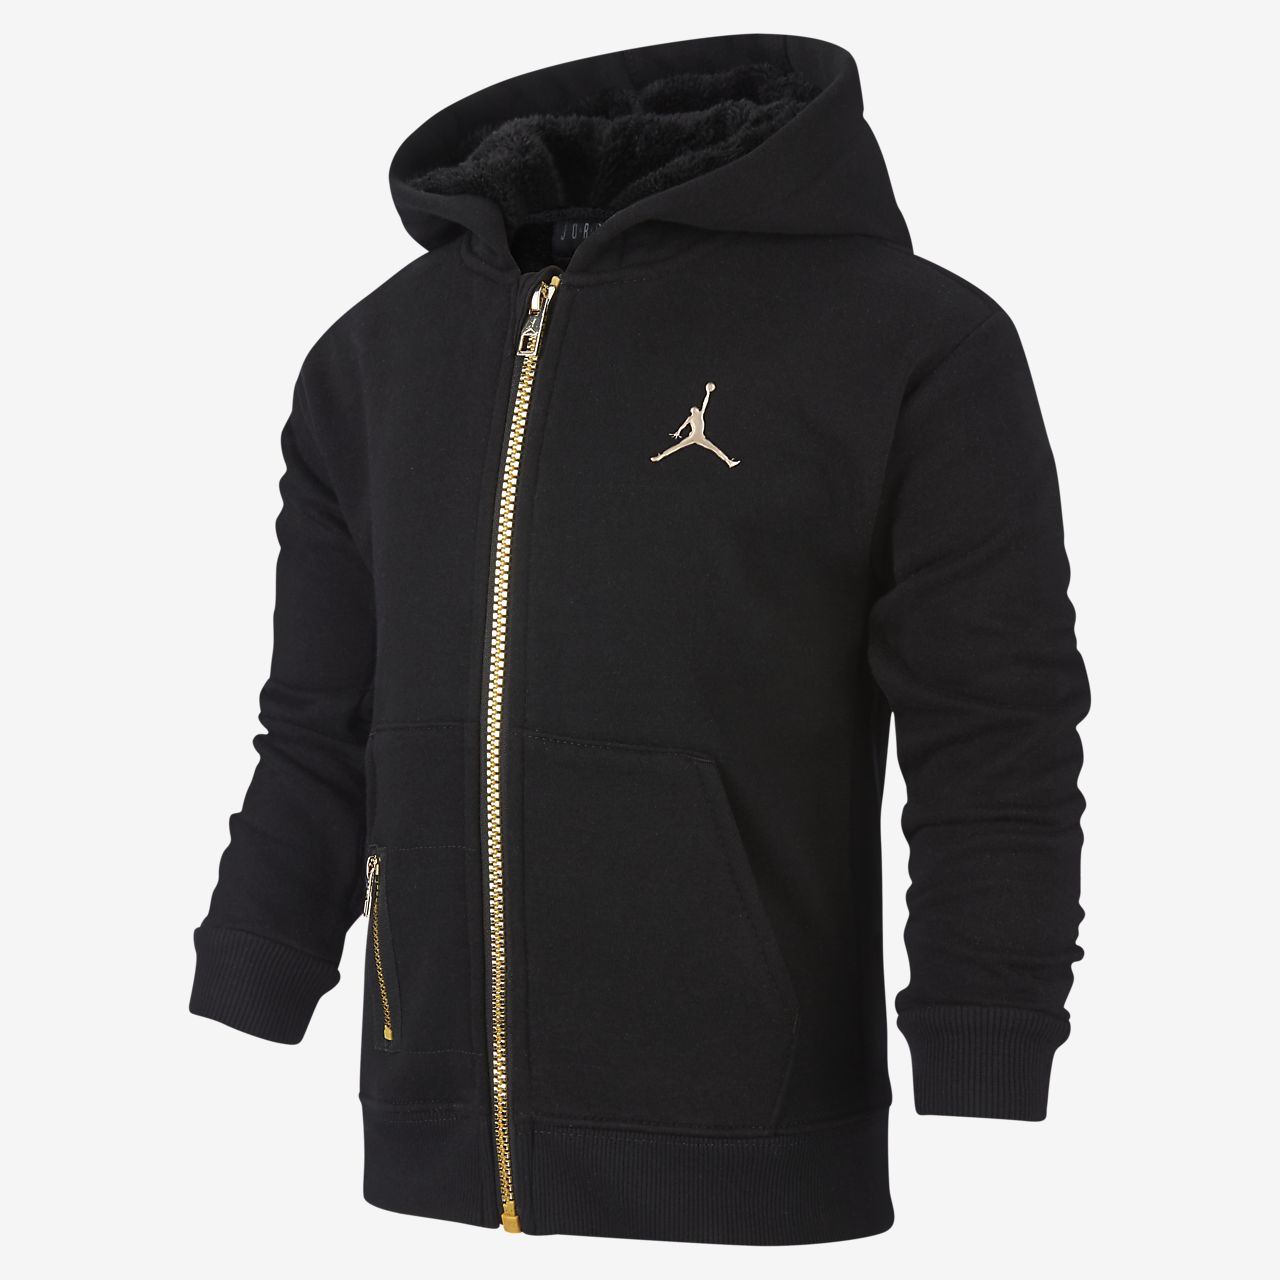 black jordan zip up jacket e18caf